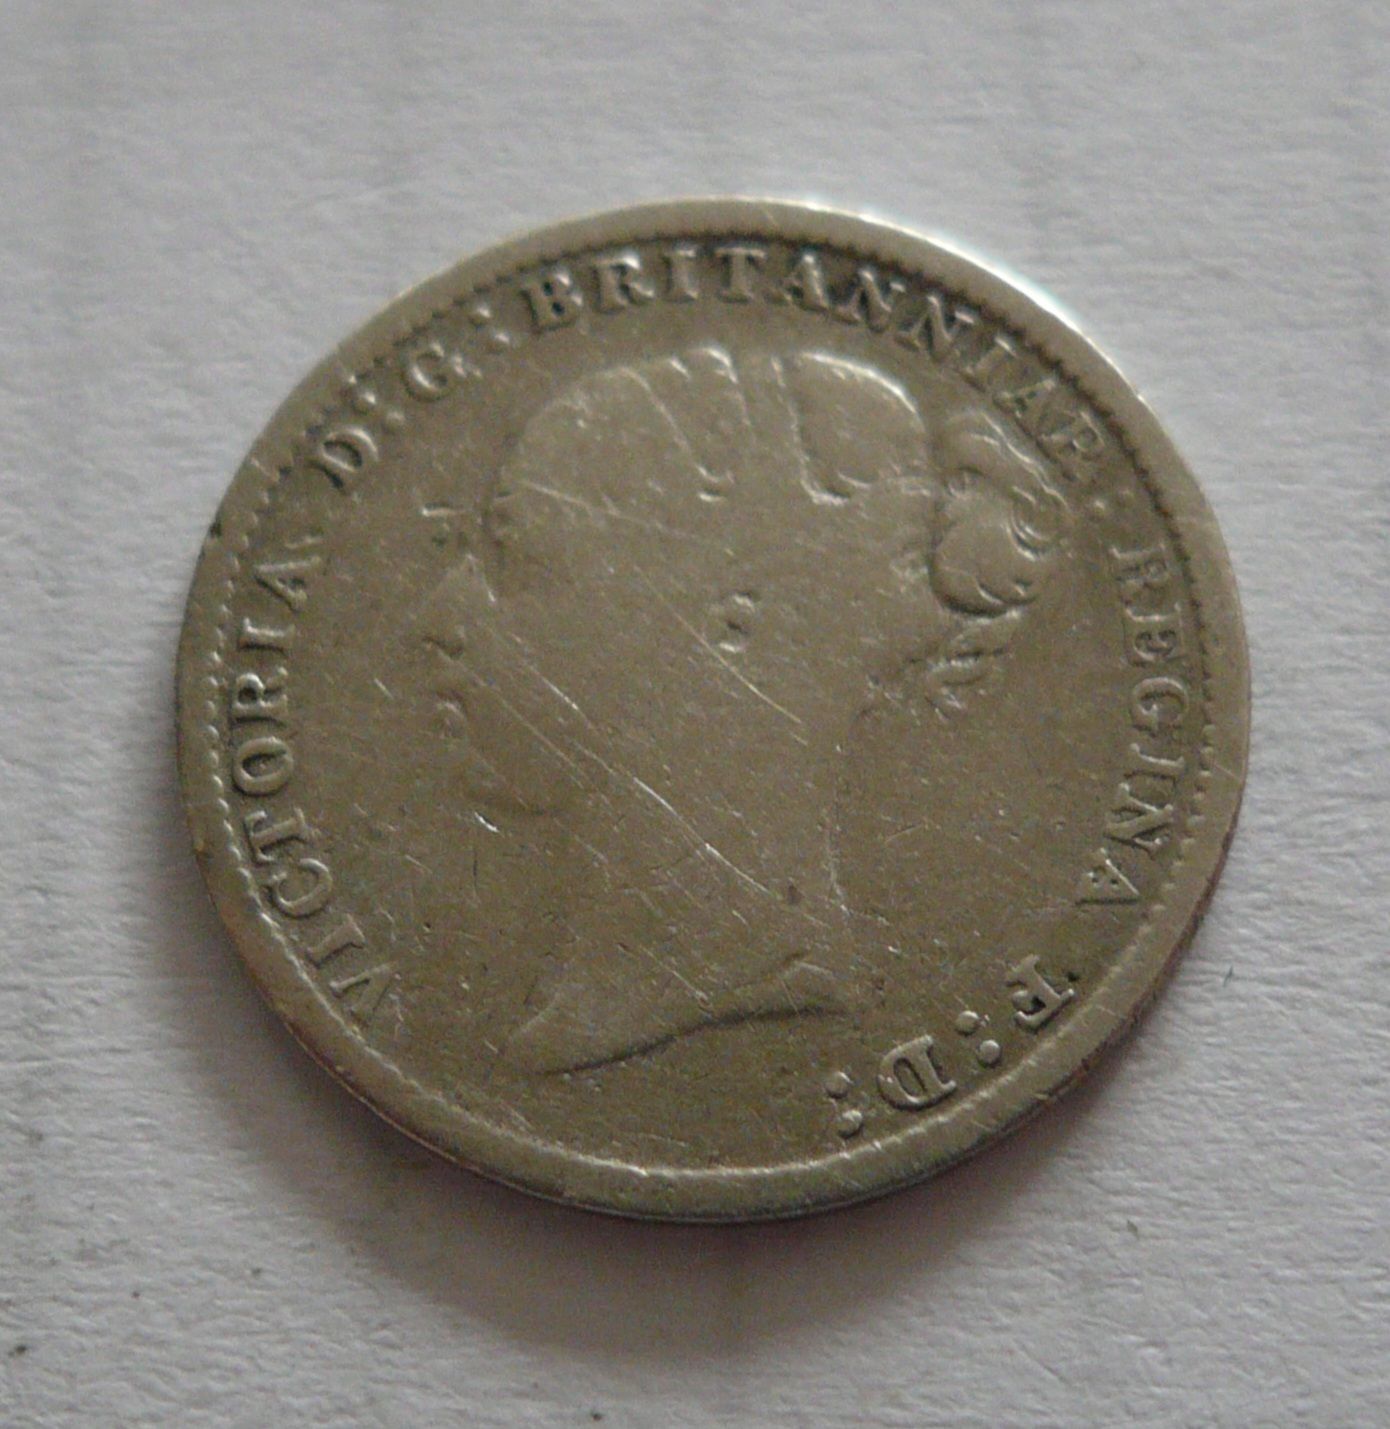 3 Pence 1883, Viktorie, Anglie